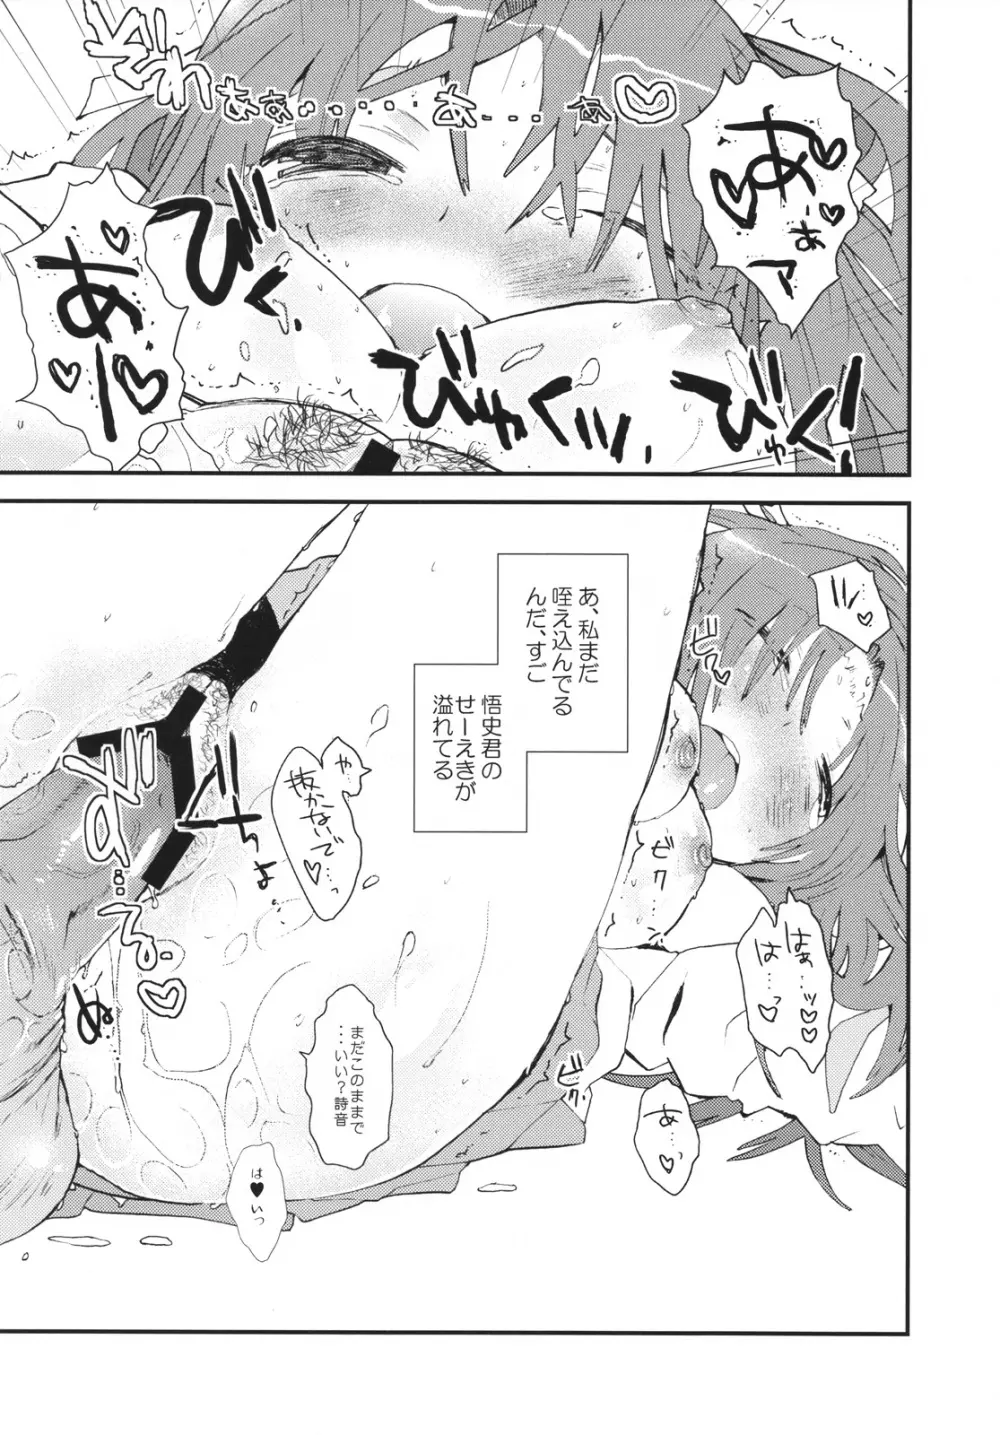 Umineko sono higurashi - page27